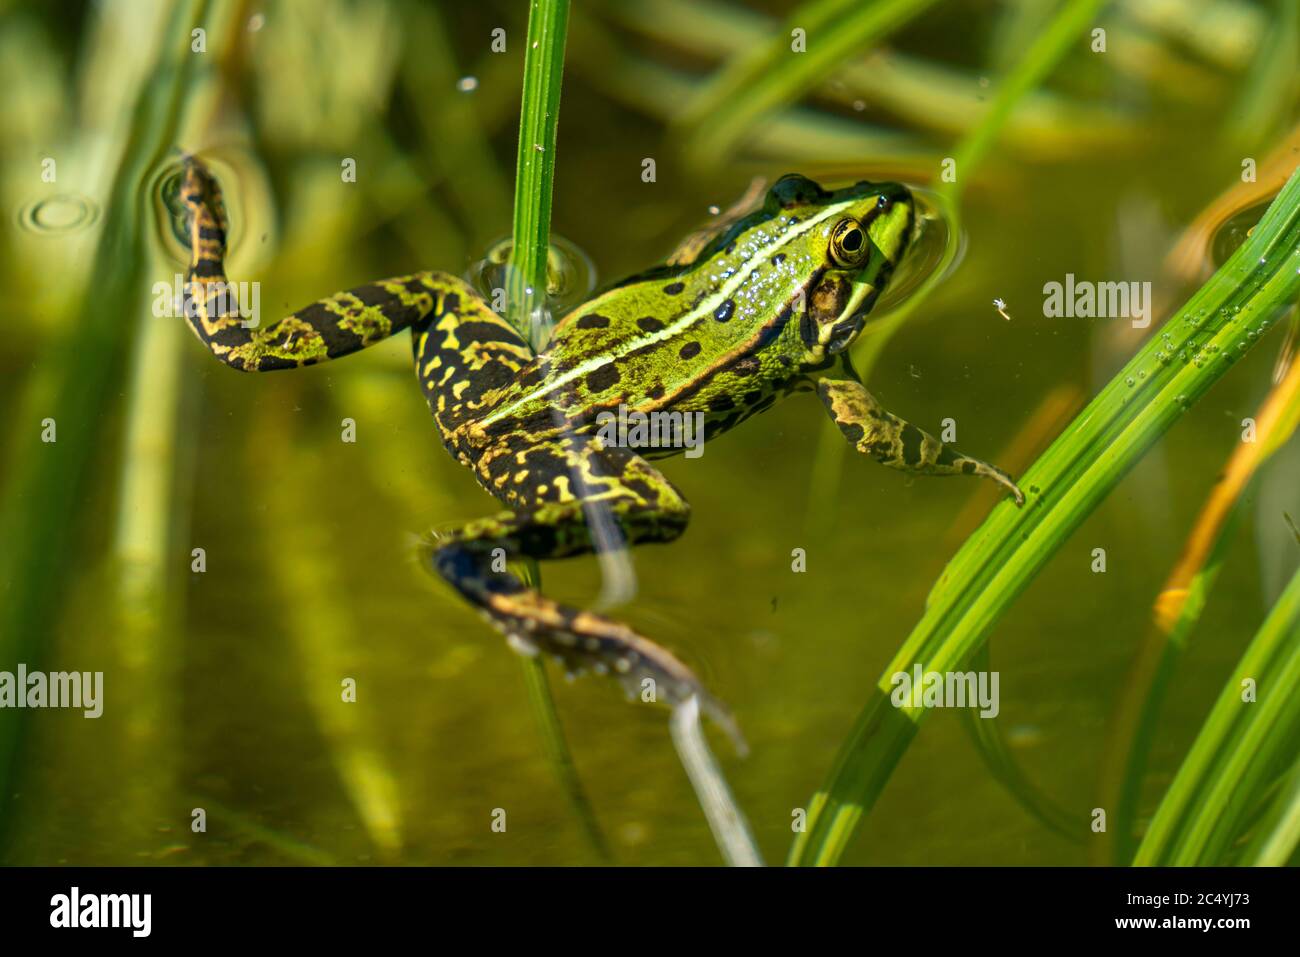 Grenouille de bassin, Pélophylax kl. Esculentus, dans un étang Photo Stock  - Alamy